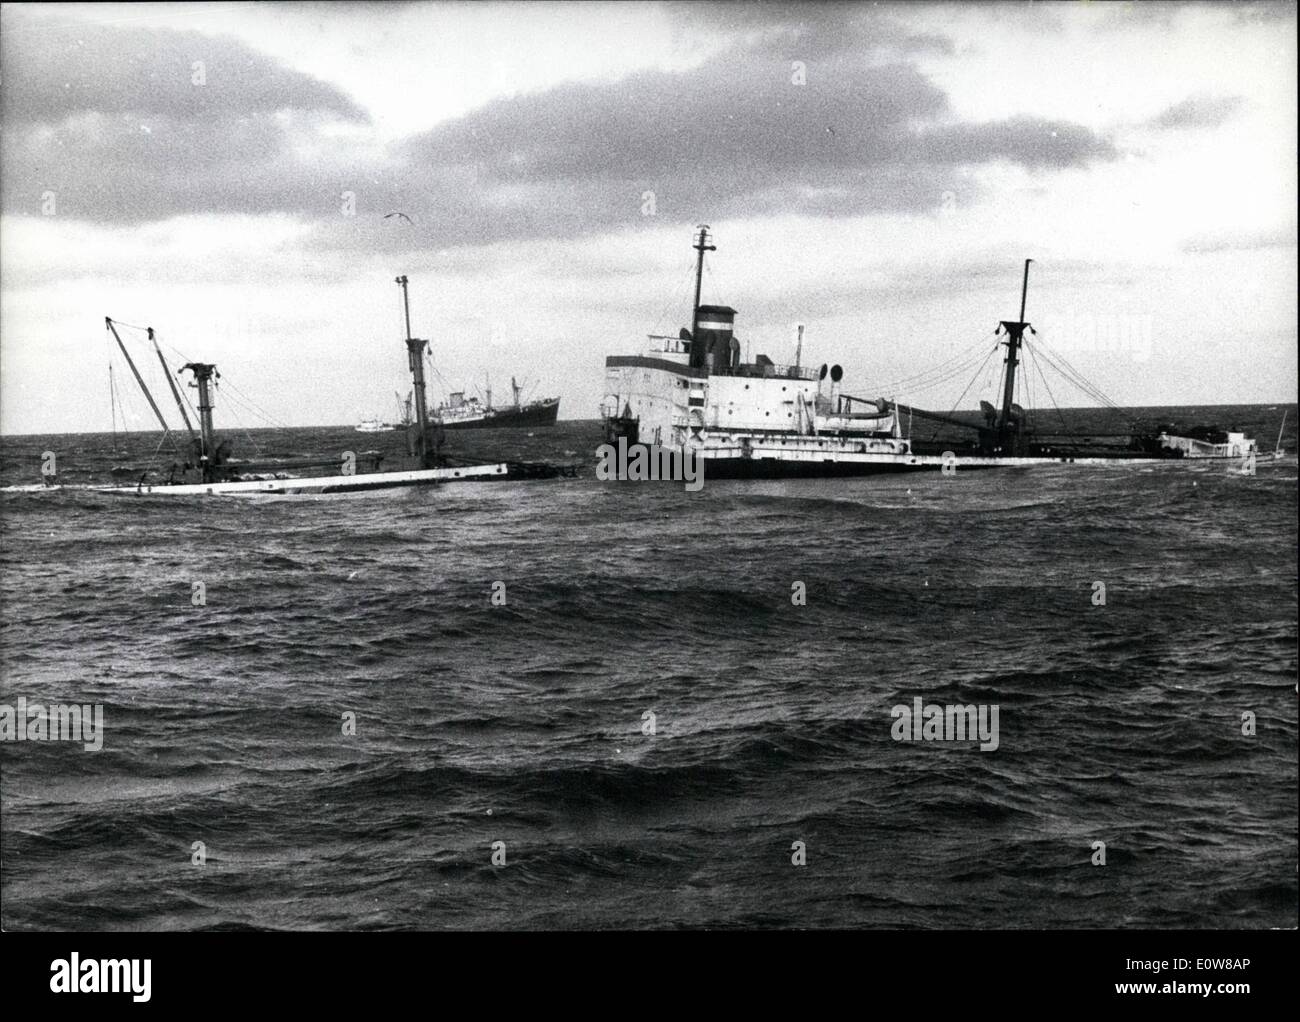 01. Januar 1962 - zwei Schiffswracks in der Elbe-Mündung: Vor drei Wochen kam das englische Schiff ''Ondo'' (ONDO) bei heftigen Stürmen von der Route und strandete an den Sandbänken ''Grosser Vogelsang''. Zwei Wochen später strandete auch das italienische Schiff "Fides" sie im gefährlichen Sand. Beide Schiffe konnten von der Besatzung rechtzeitig zurückgelassen werden, aber die Schiffe sind verloren. Nur ein kleiner Teil der wertvollen Ladung des ''Ondo'' (Ca Beams) konnte gerettet werden. Vom Erzfrachter "Fides" konnten die Fischer in letzter Minute nur wertvolle Instrumente und vergessene Papiere retten Stockfoto